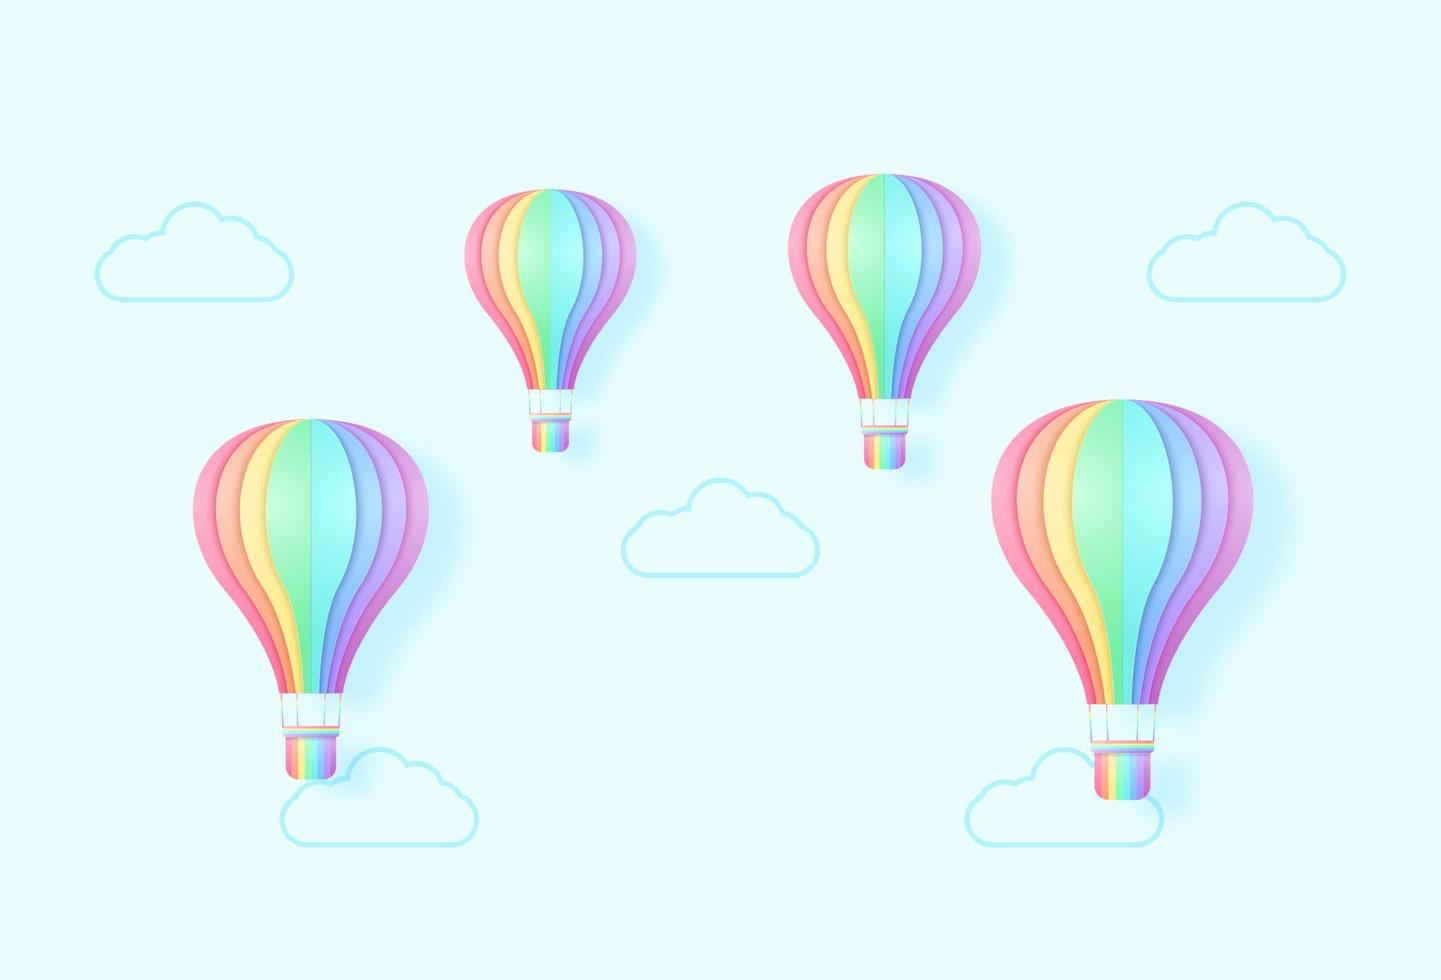 färgglada luftballonger som flyger på himlen, regnbågsfärg, papper konststil vektor